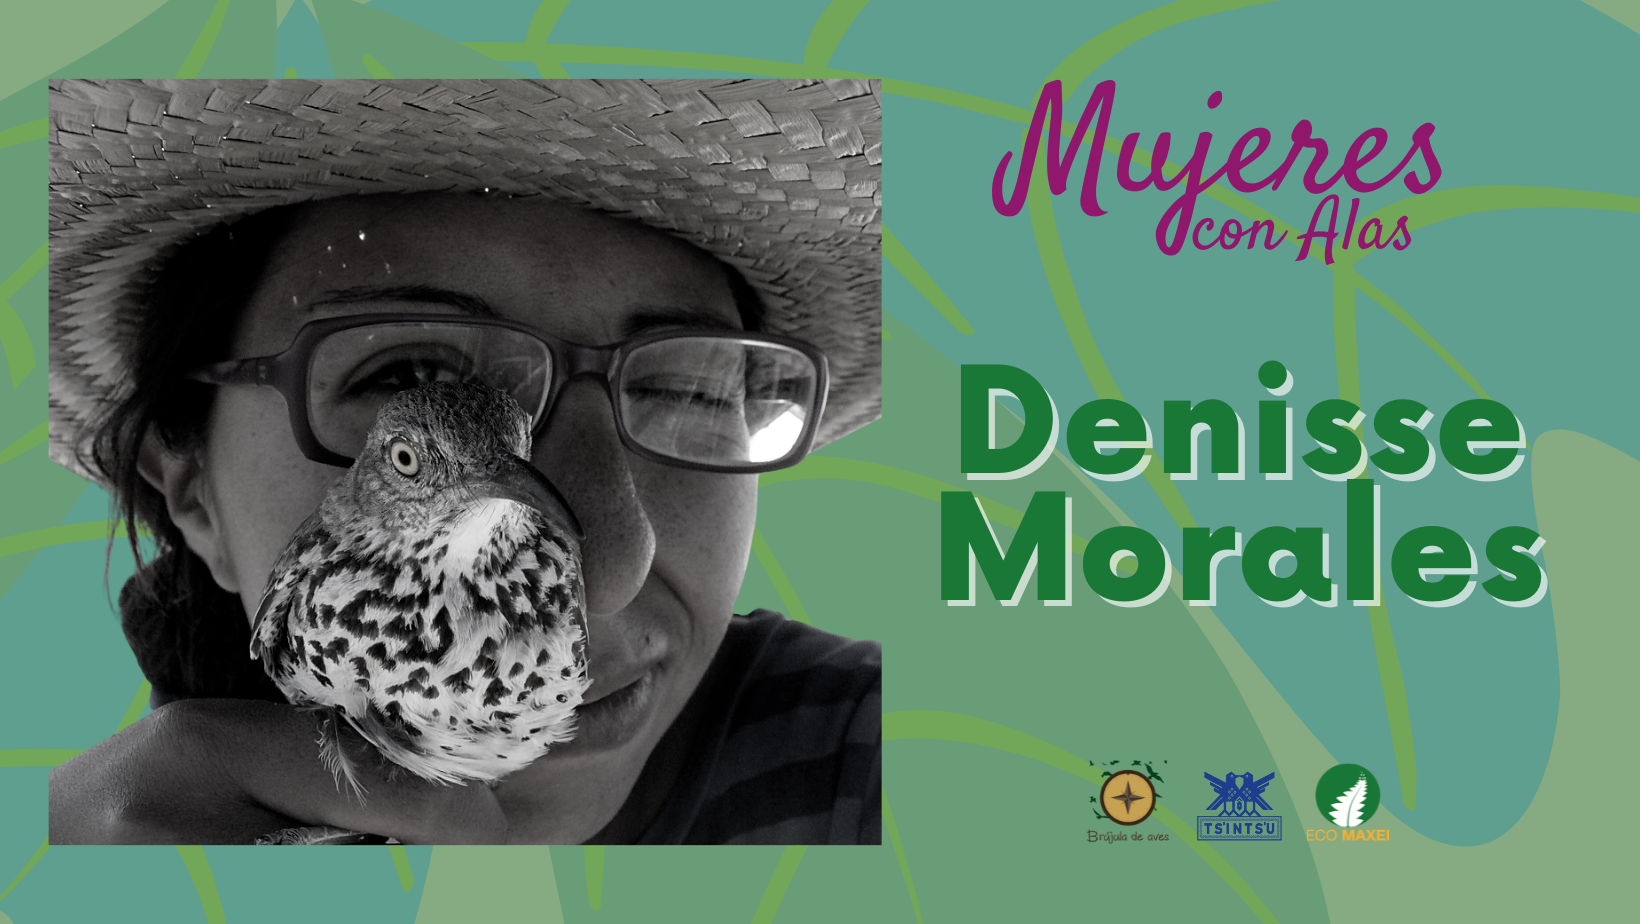 Denisse Morales, una Mujer con alas